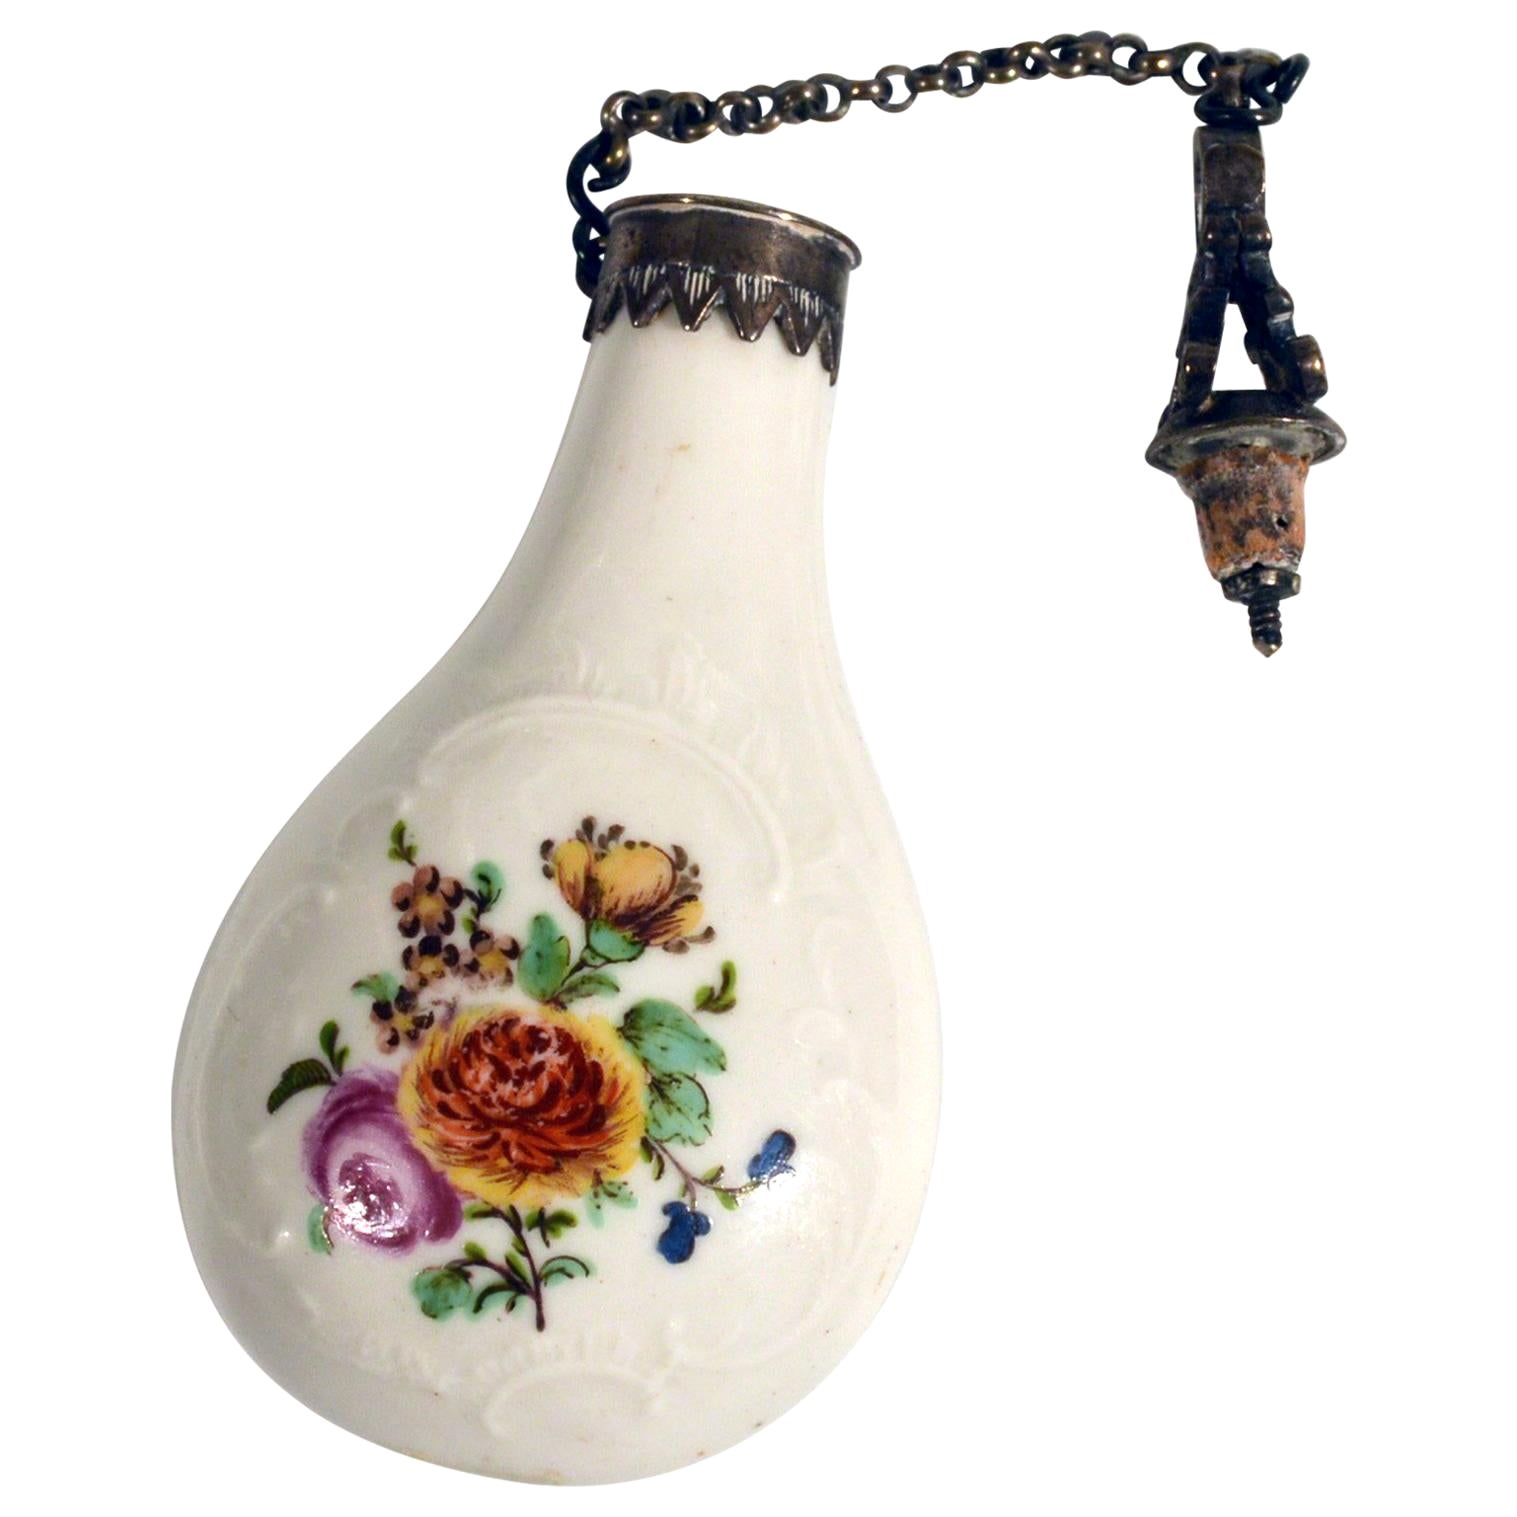 Parfümflasche aus französischem Porzellan mit Blumenbouquets, um 1775